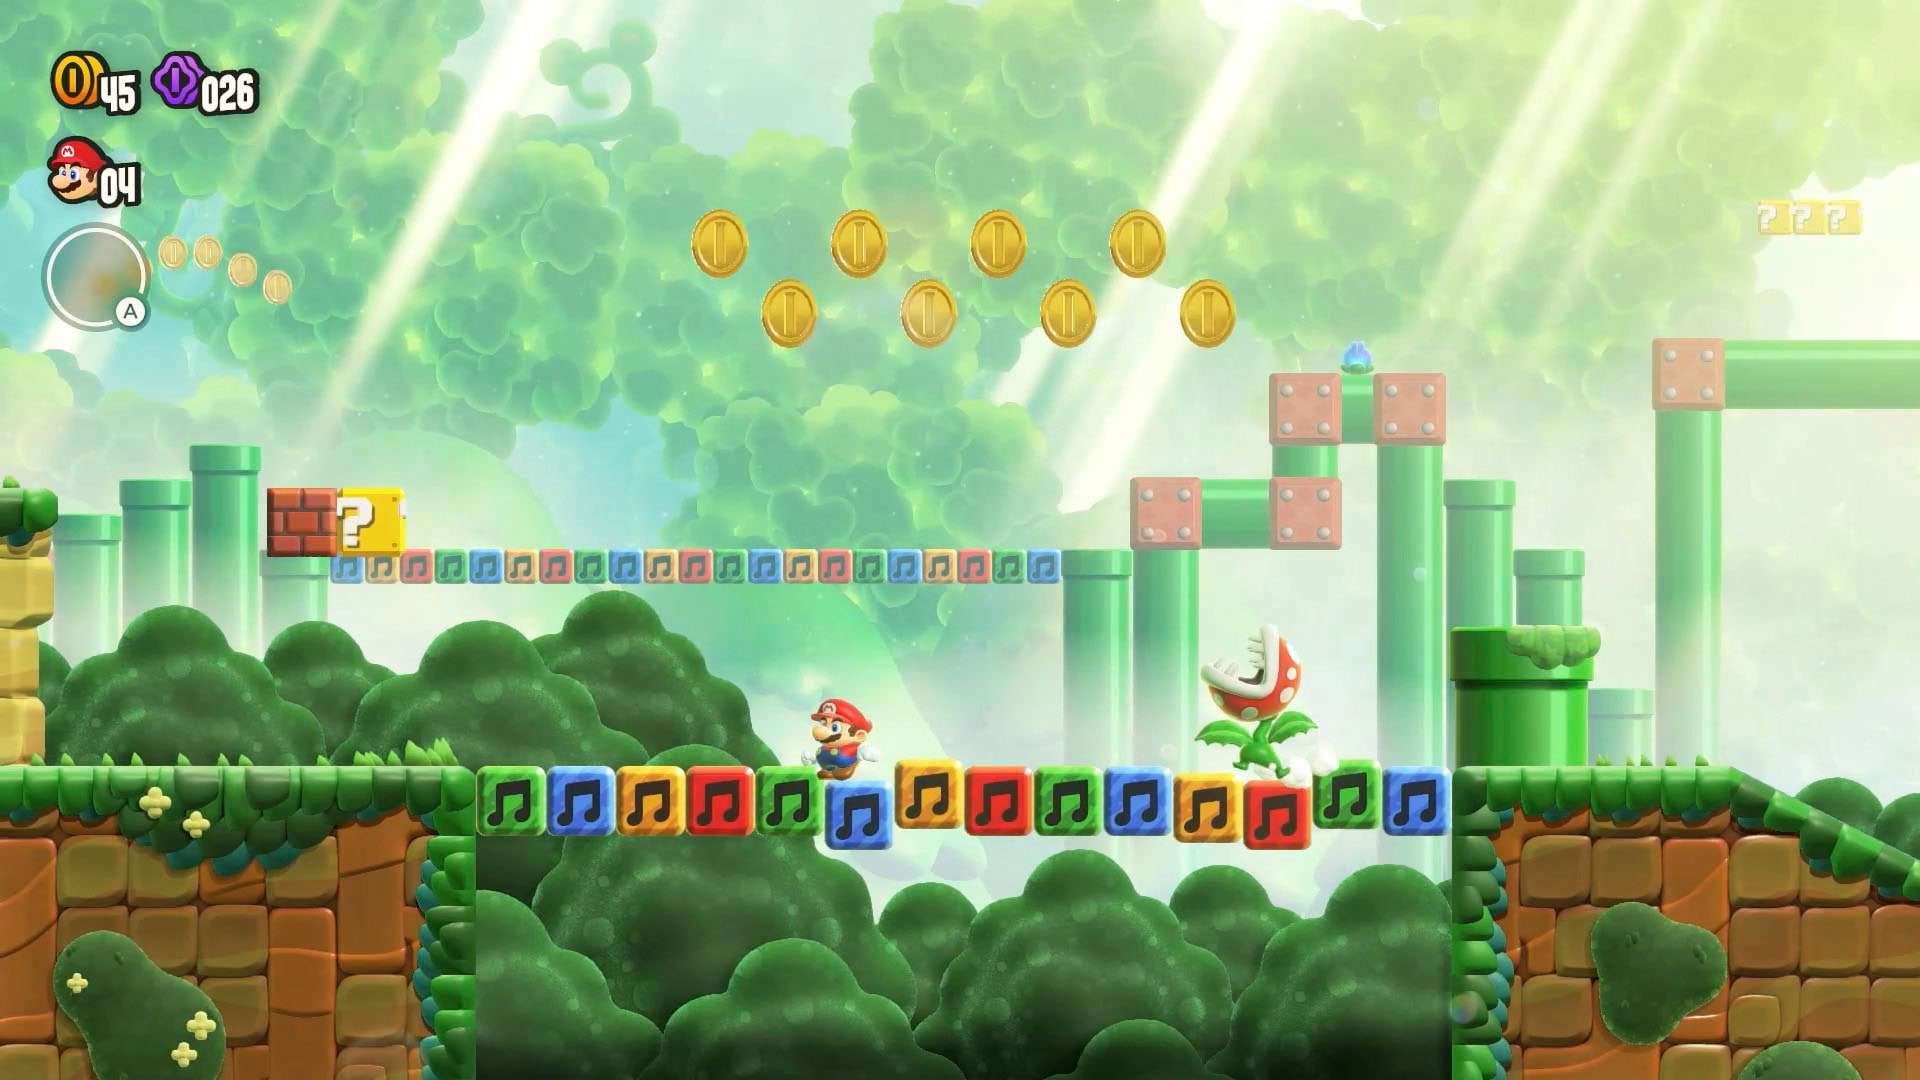 Nintendo Switch Spielesoftware »Super Mario Bros. Wonder«, Nintendo Switch